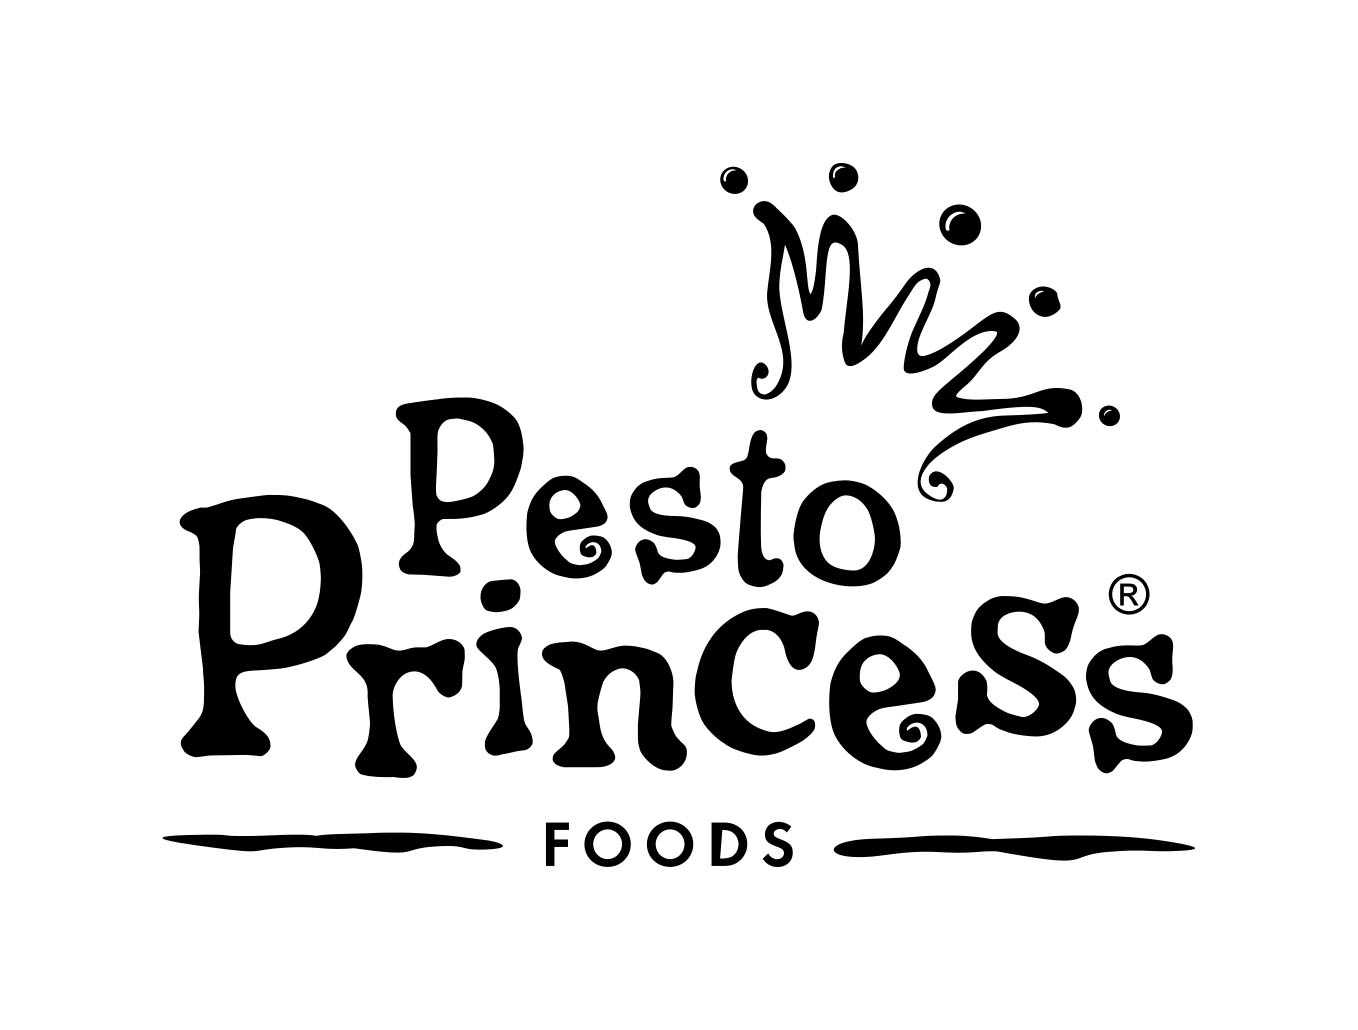 Pesto Princess